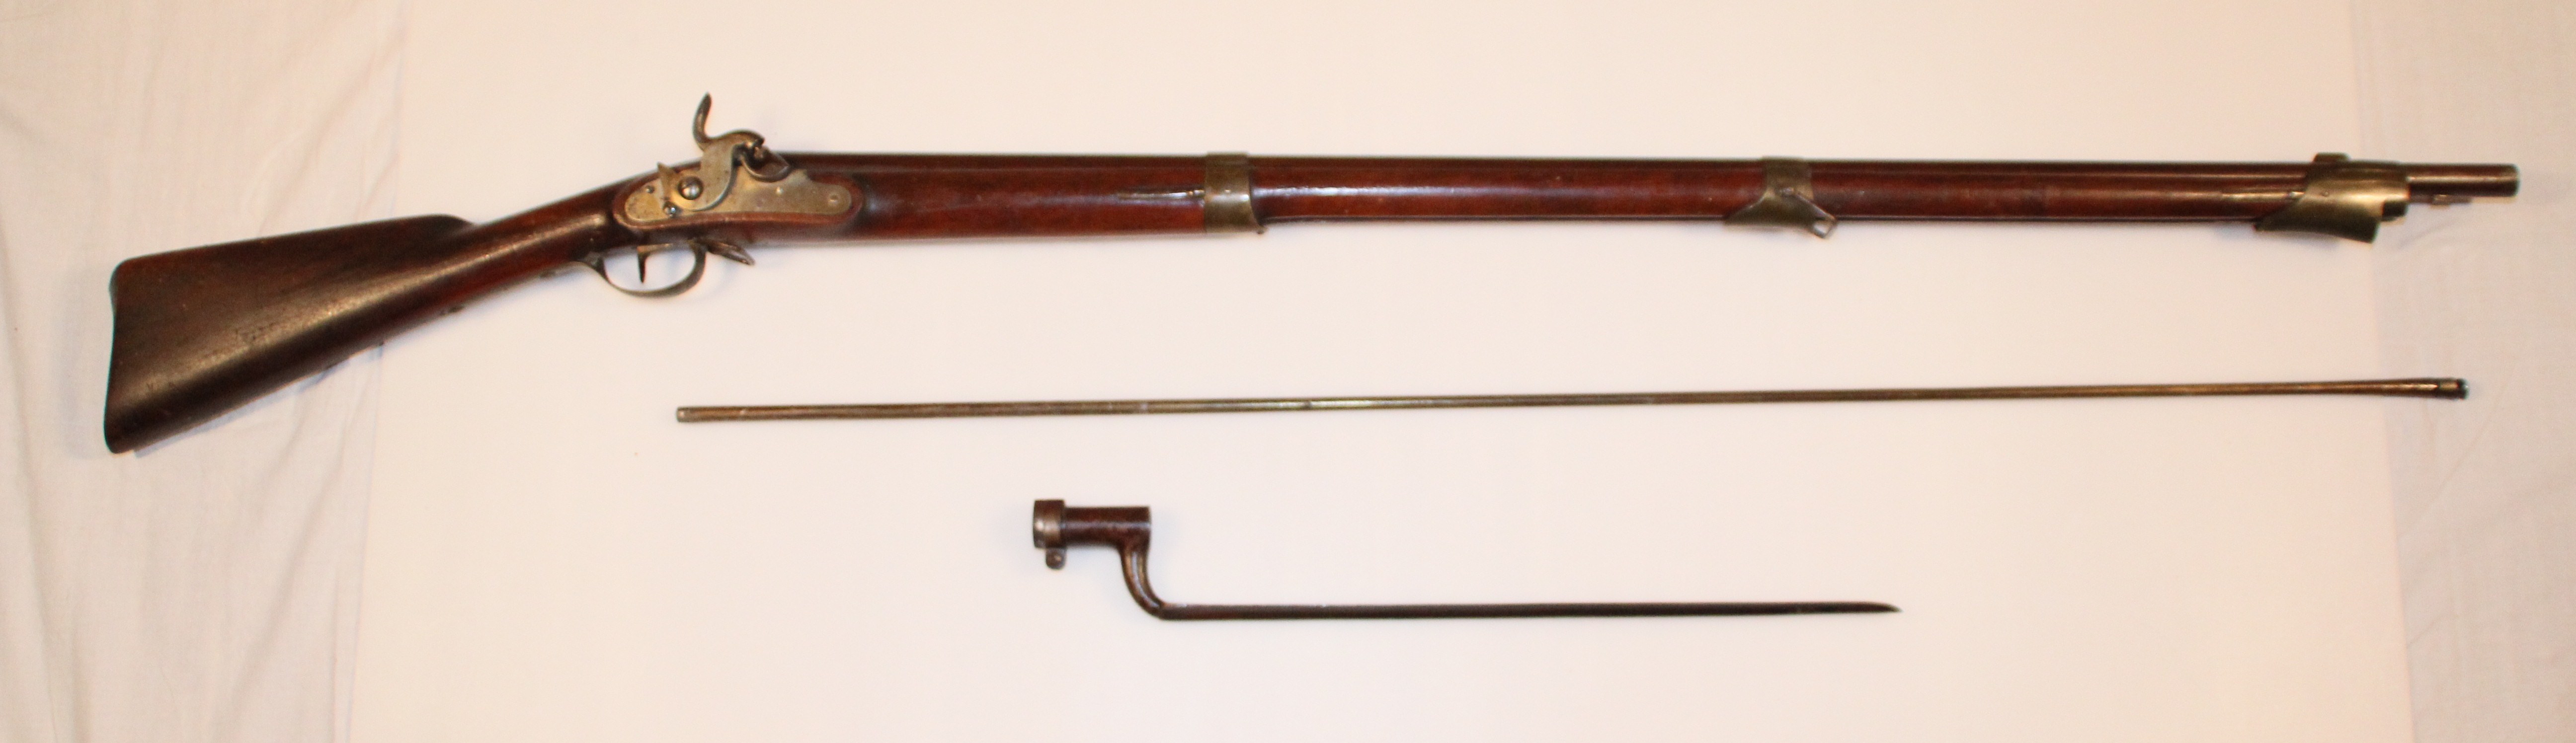 ./guns/rifle/bilder/Muskett-Kongsberg-M1843-Krigsskole-15-3.JPG